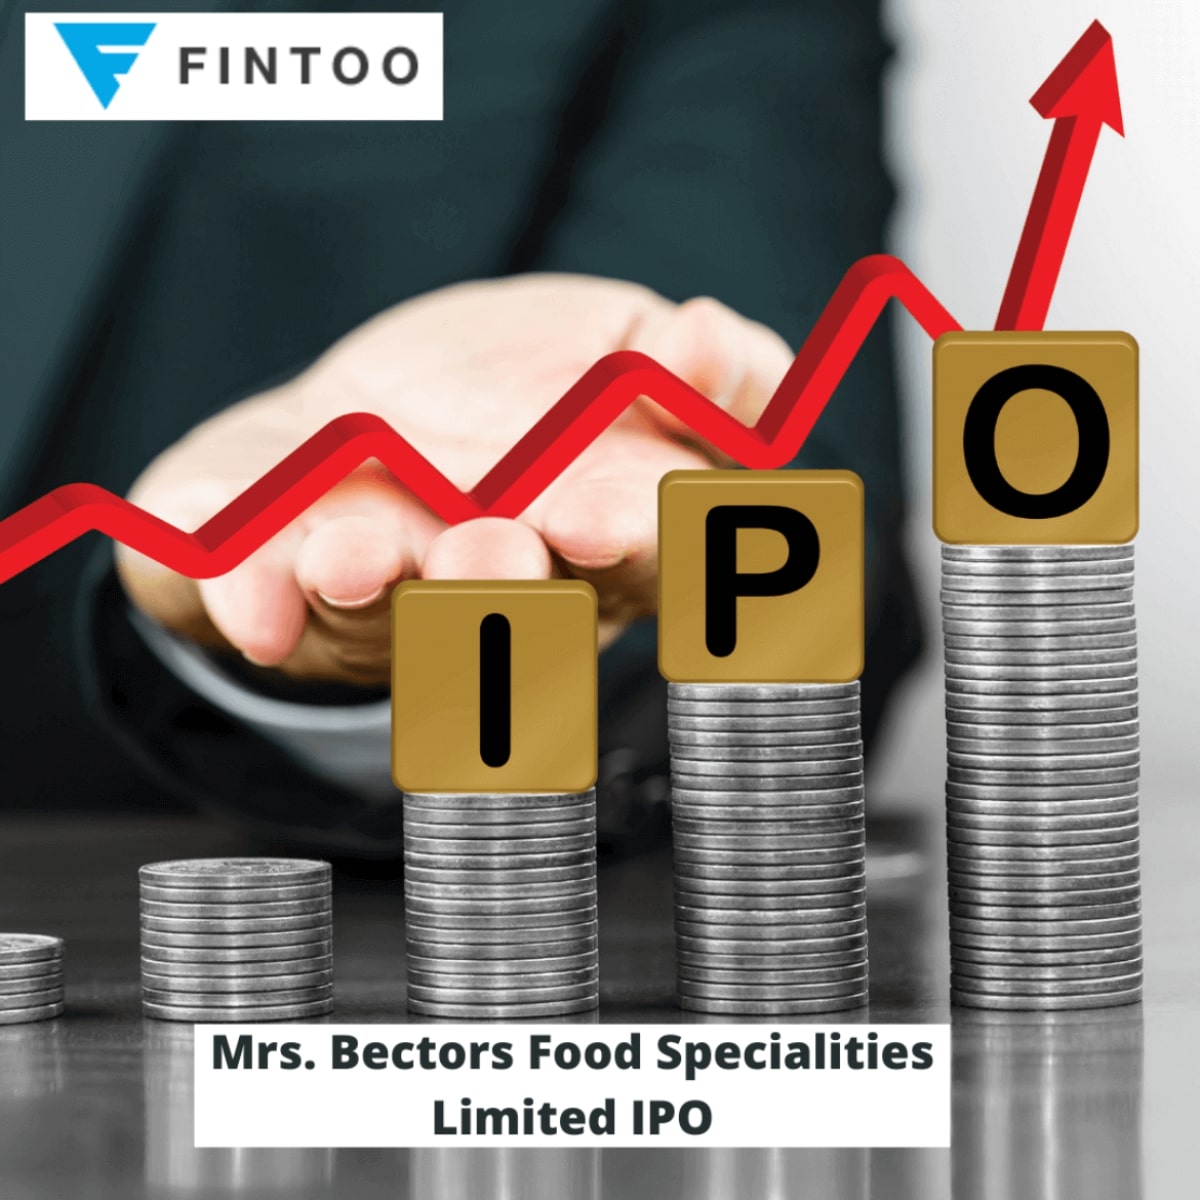 Mrs. Bectors Food Specialities Ltd